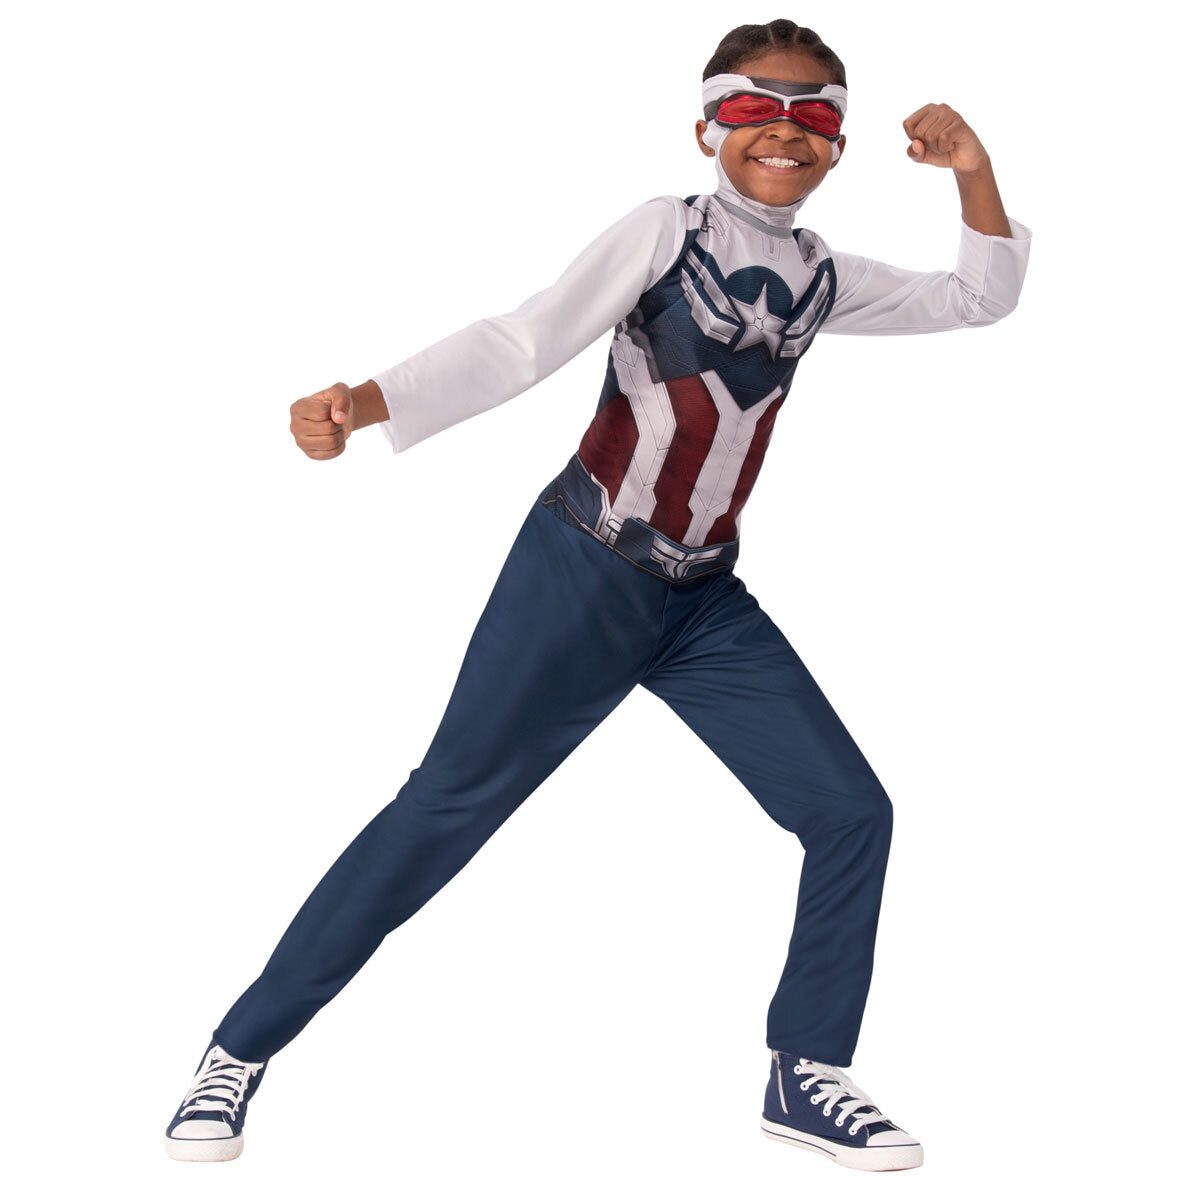 Marvel Avengers Captain America 2 Dress Up Costume